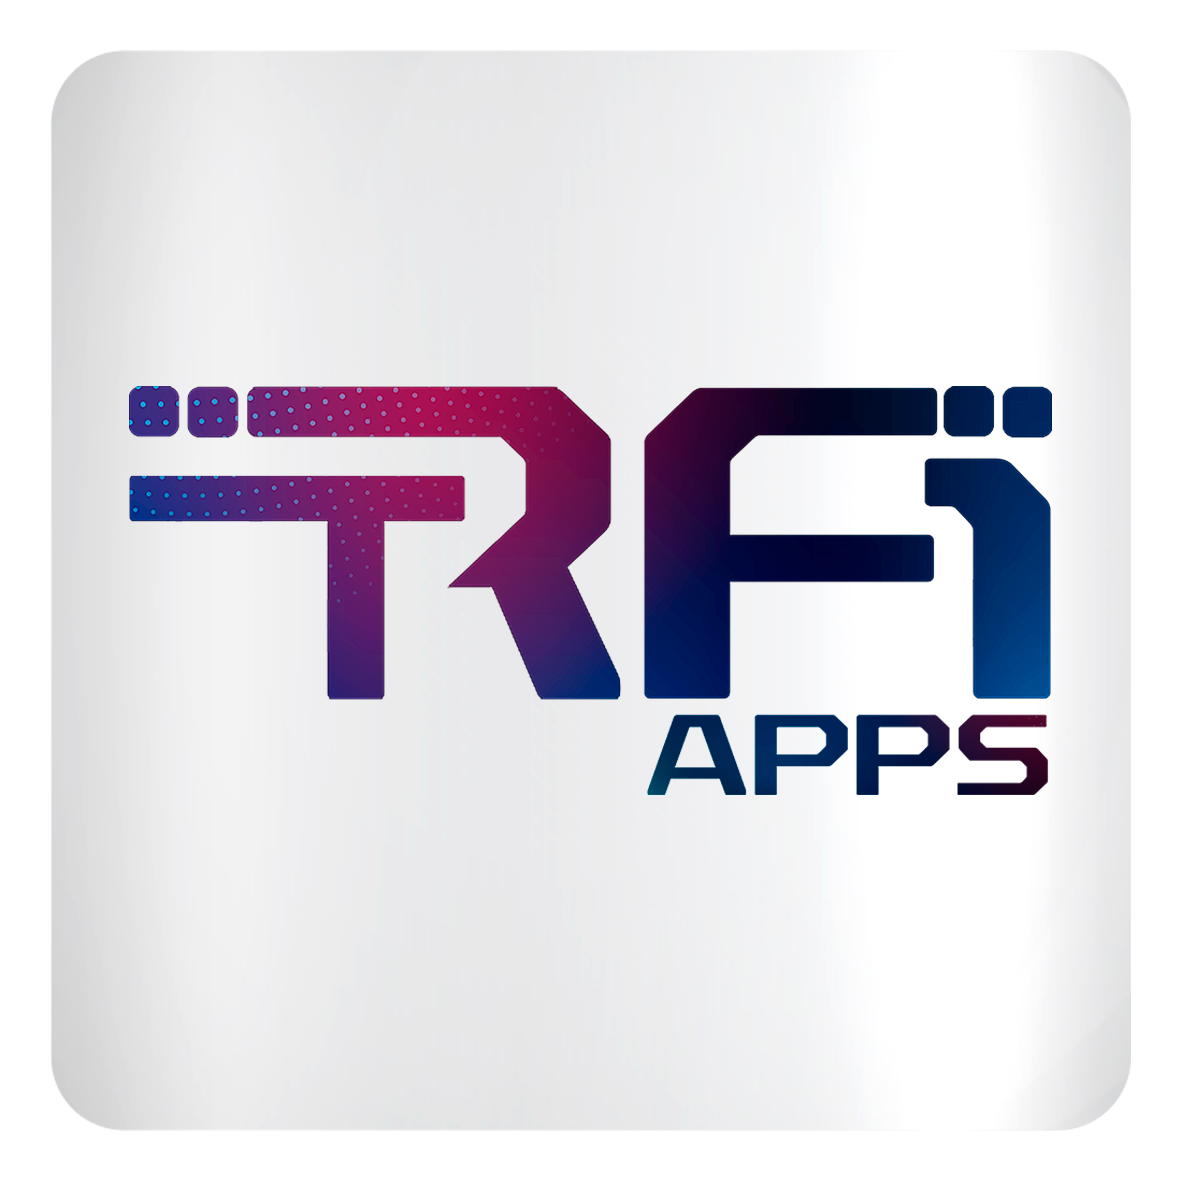 INSTITUCIONAL: Central de aplicativos TRF1 Apps oferece mais autonomia para os usuários internos do Tribunal